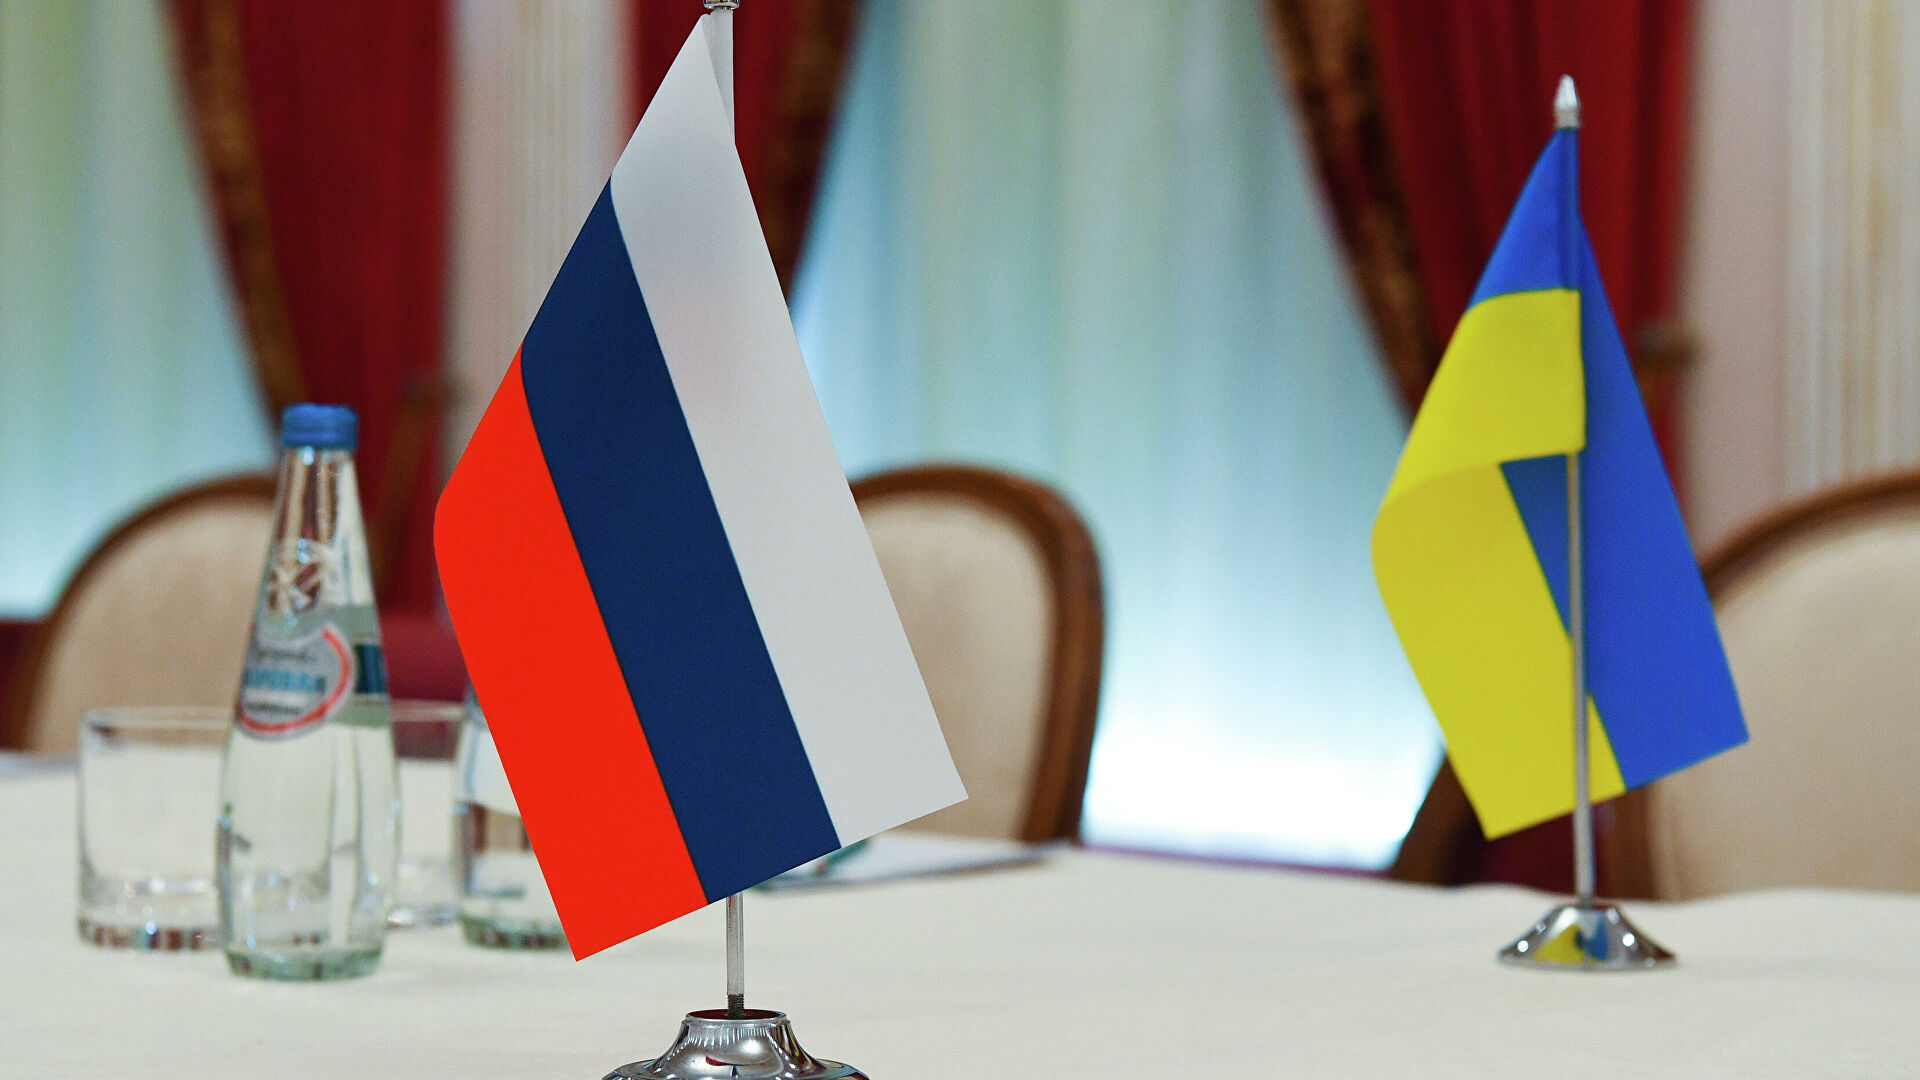 وفدا روسيا وأوكرانيا يستعدان لجلسة مفاوضات ثانية في بيلاروسيا بالتزامن مع احتدام المعارك